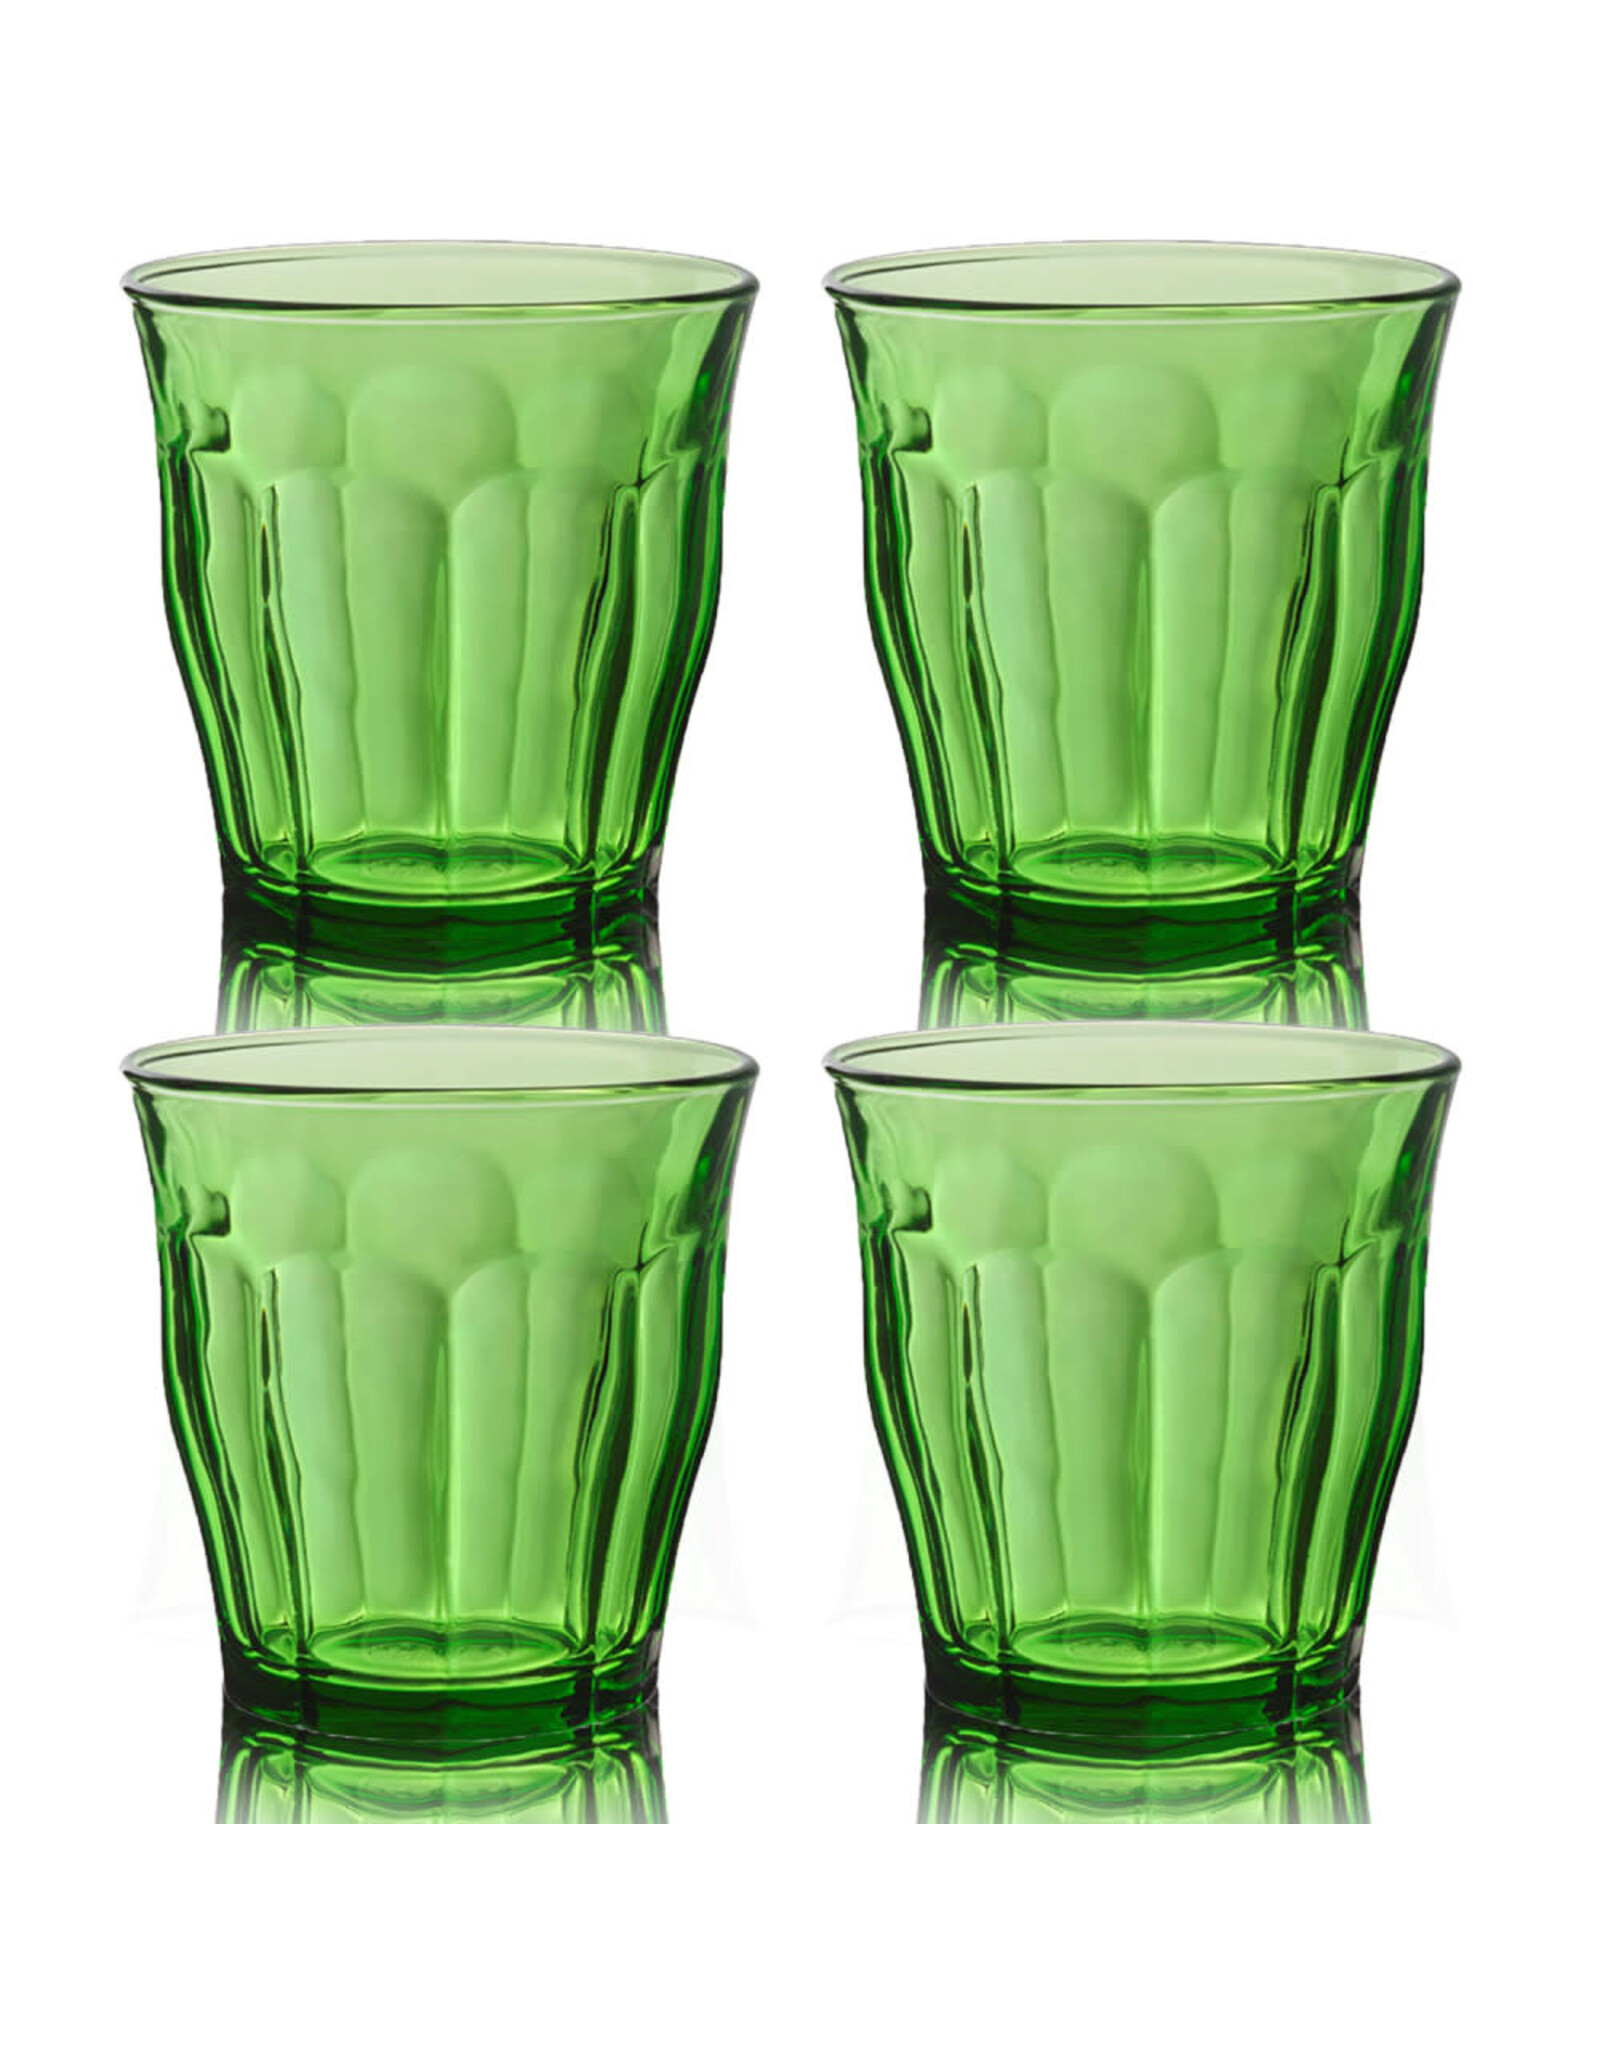 Duralex Picardie Green Glasses - 10 3/8oz - Set of 4